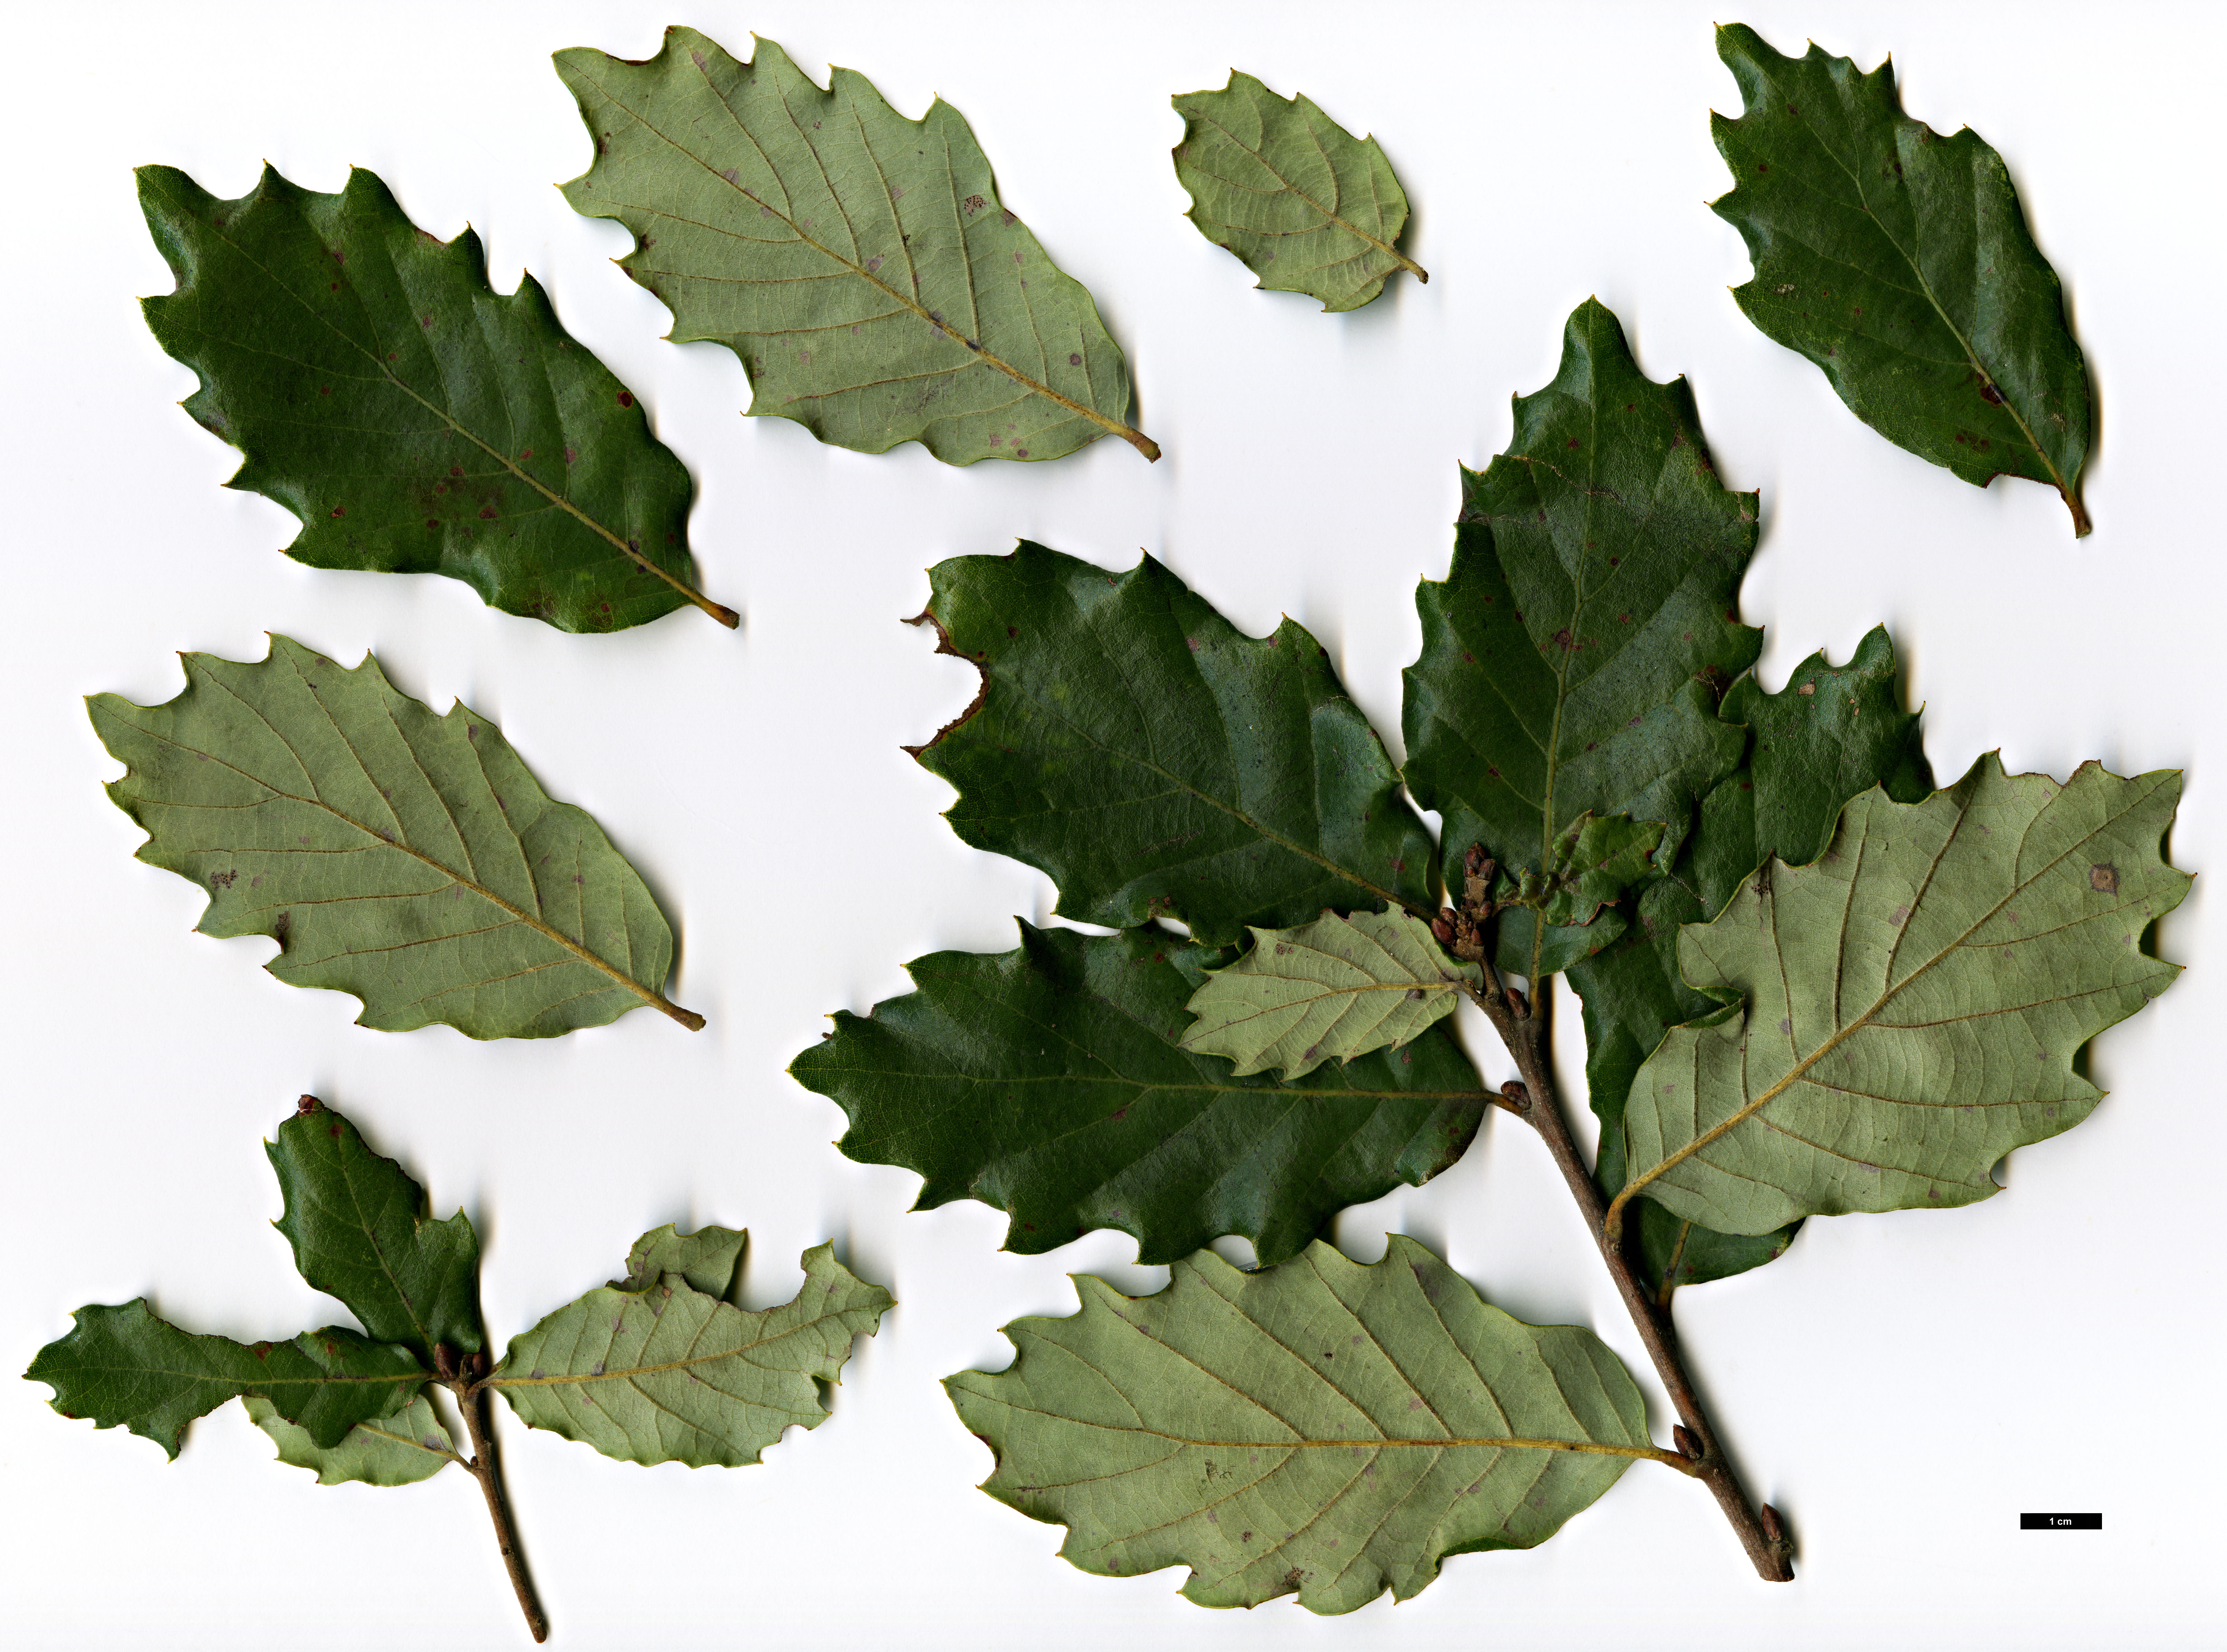 High resolution image: Family: Fagaceae - Genus: Quercus - Taxon: ×pacensis (Q.faginea subsp. broteroi × Q.suber)